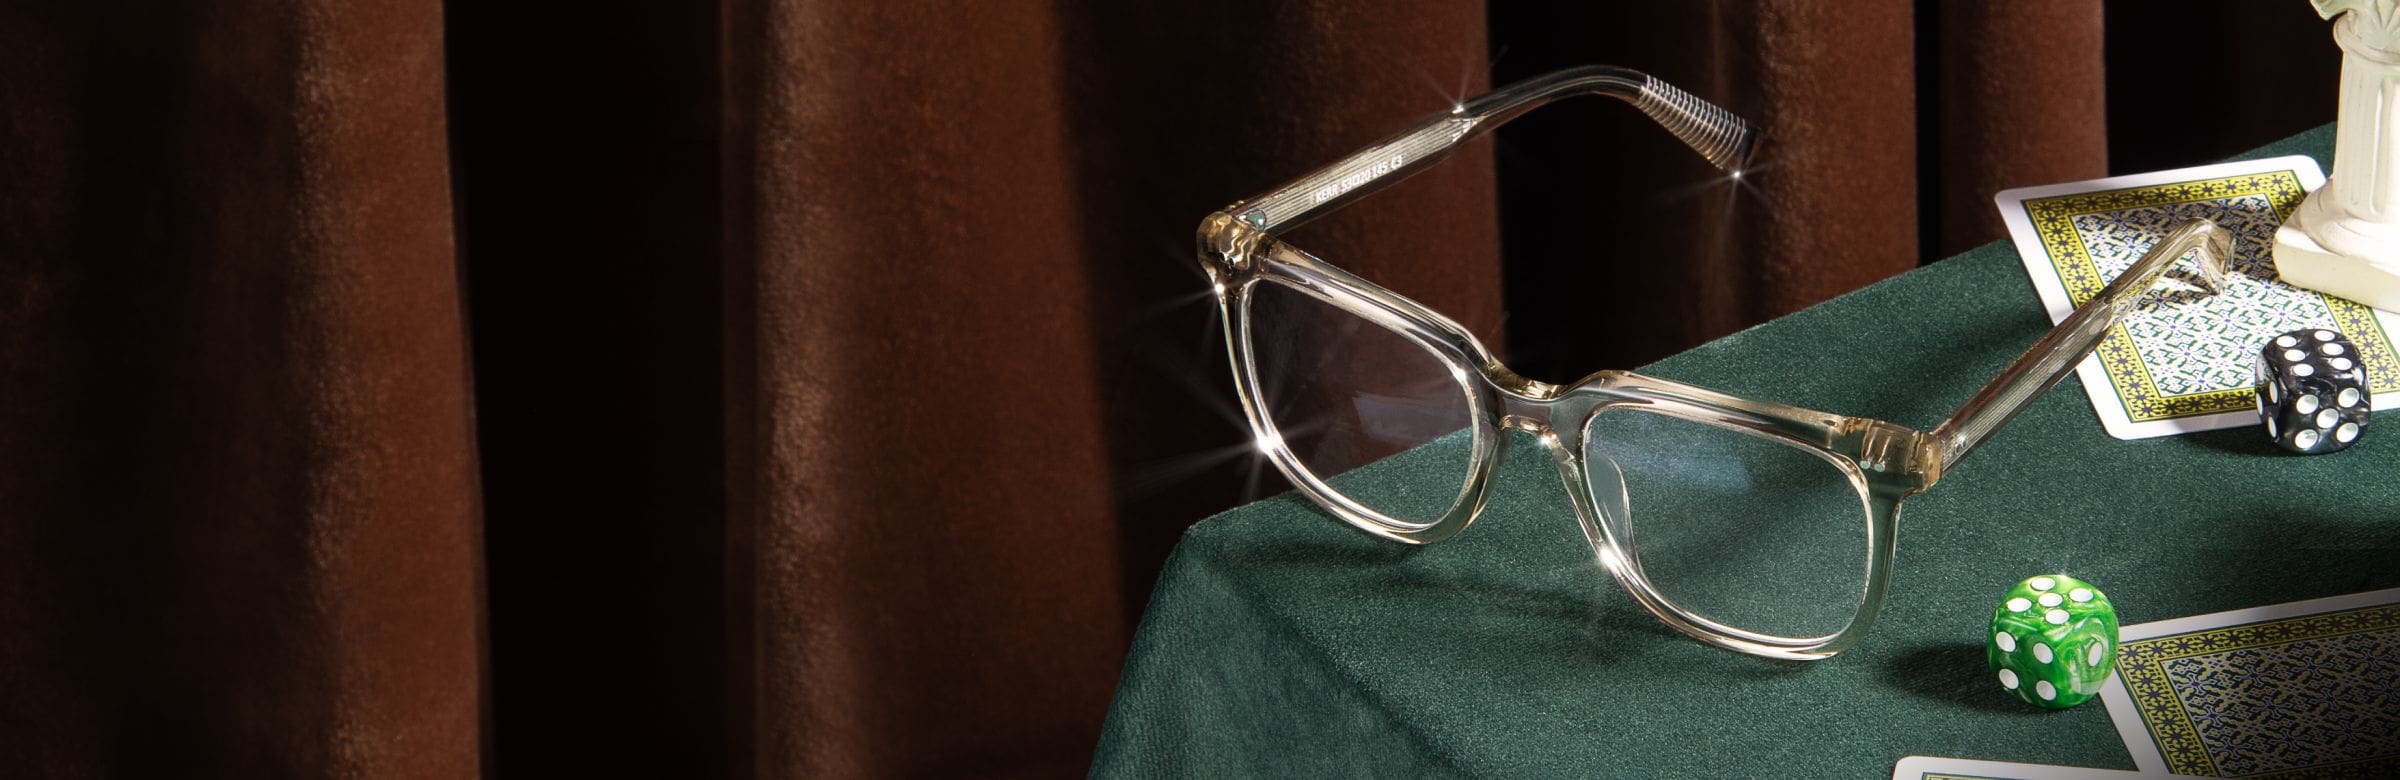 Une gamme de lunettes modernes aux accents créatifs.